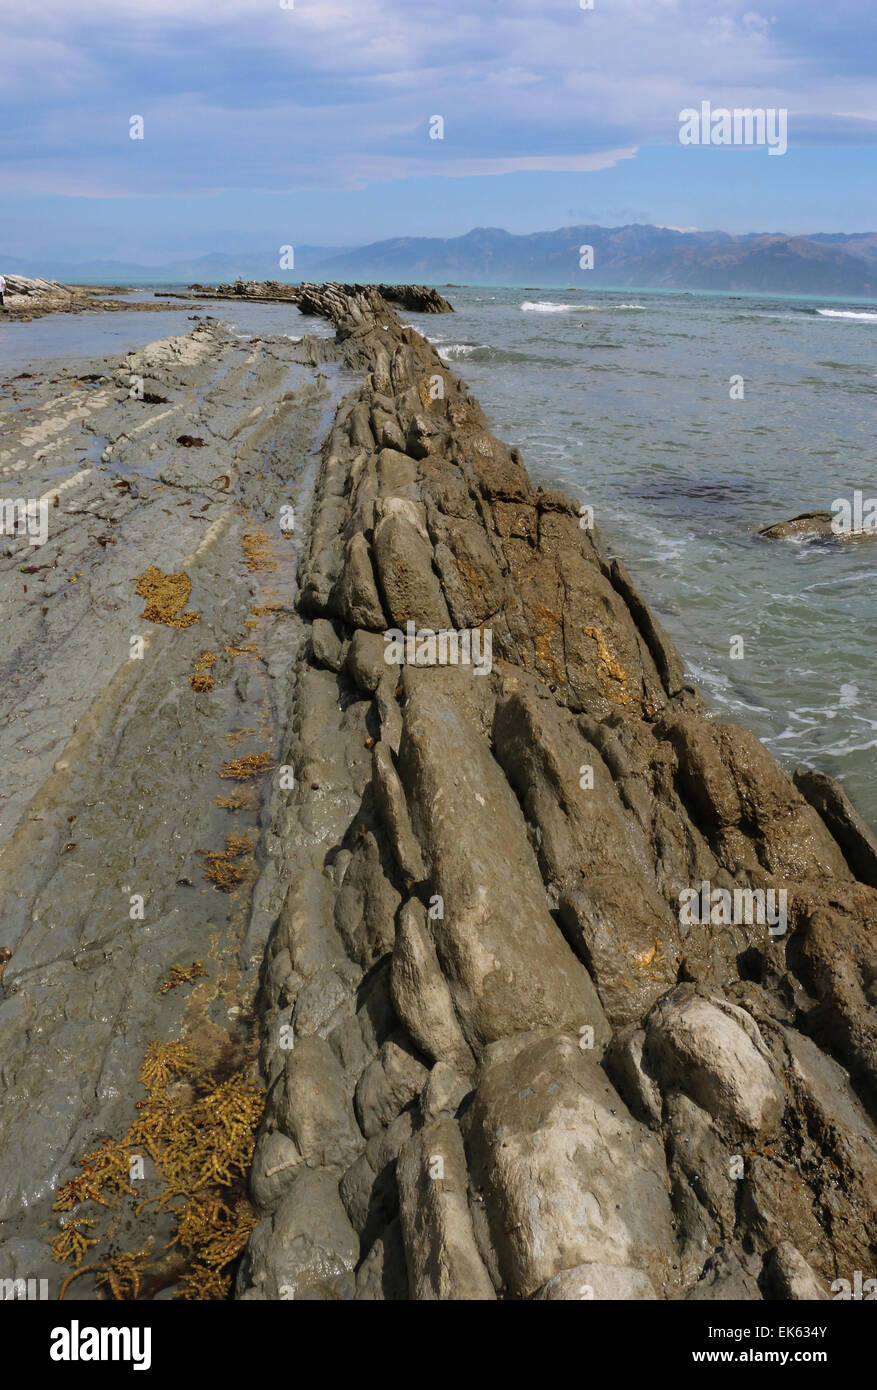 Las capas de roca caliza y pozas de marea de la península de Kaikoura, Isla del Sur, Nueva Zelanda Foto de stock